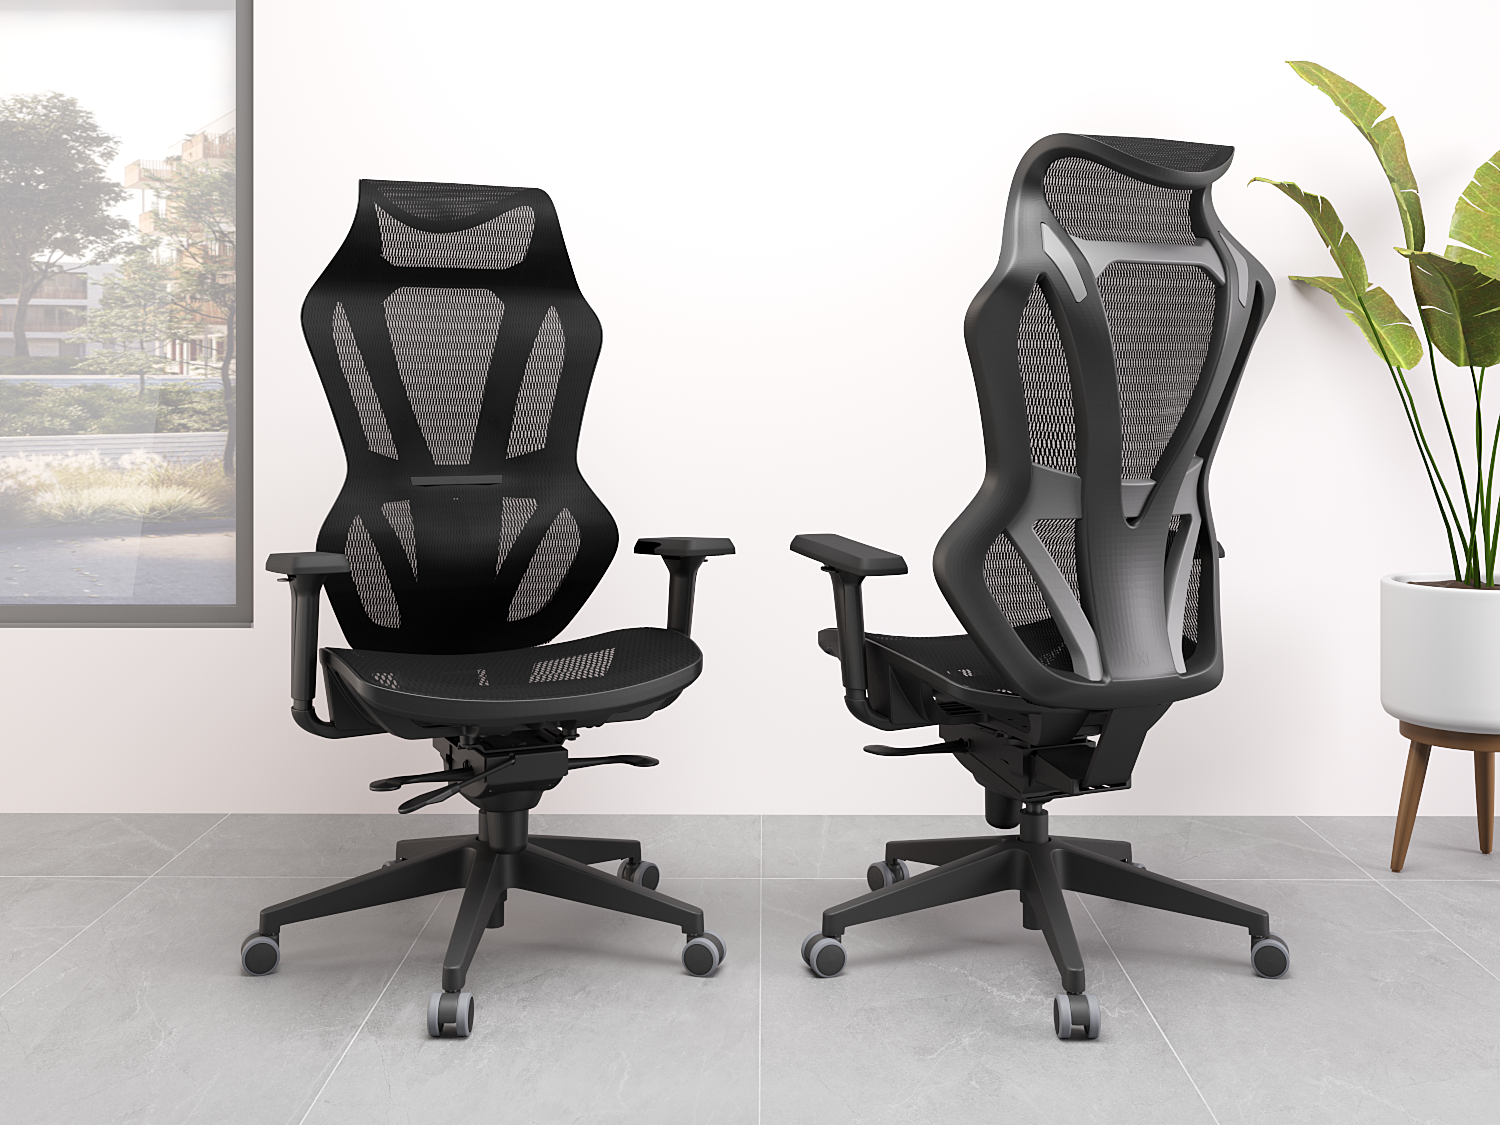 A Cadeira Vizon Plaxmetal possui Design moderno e elegante | Codistoke